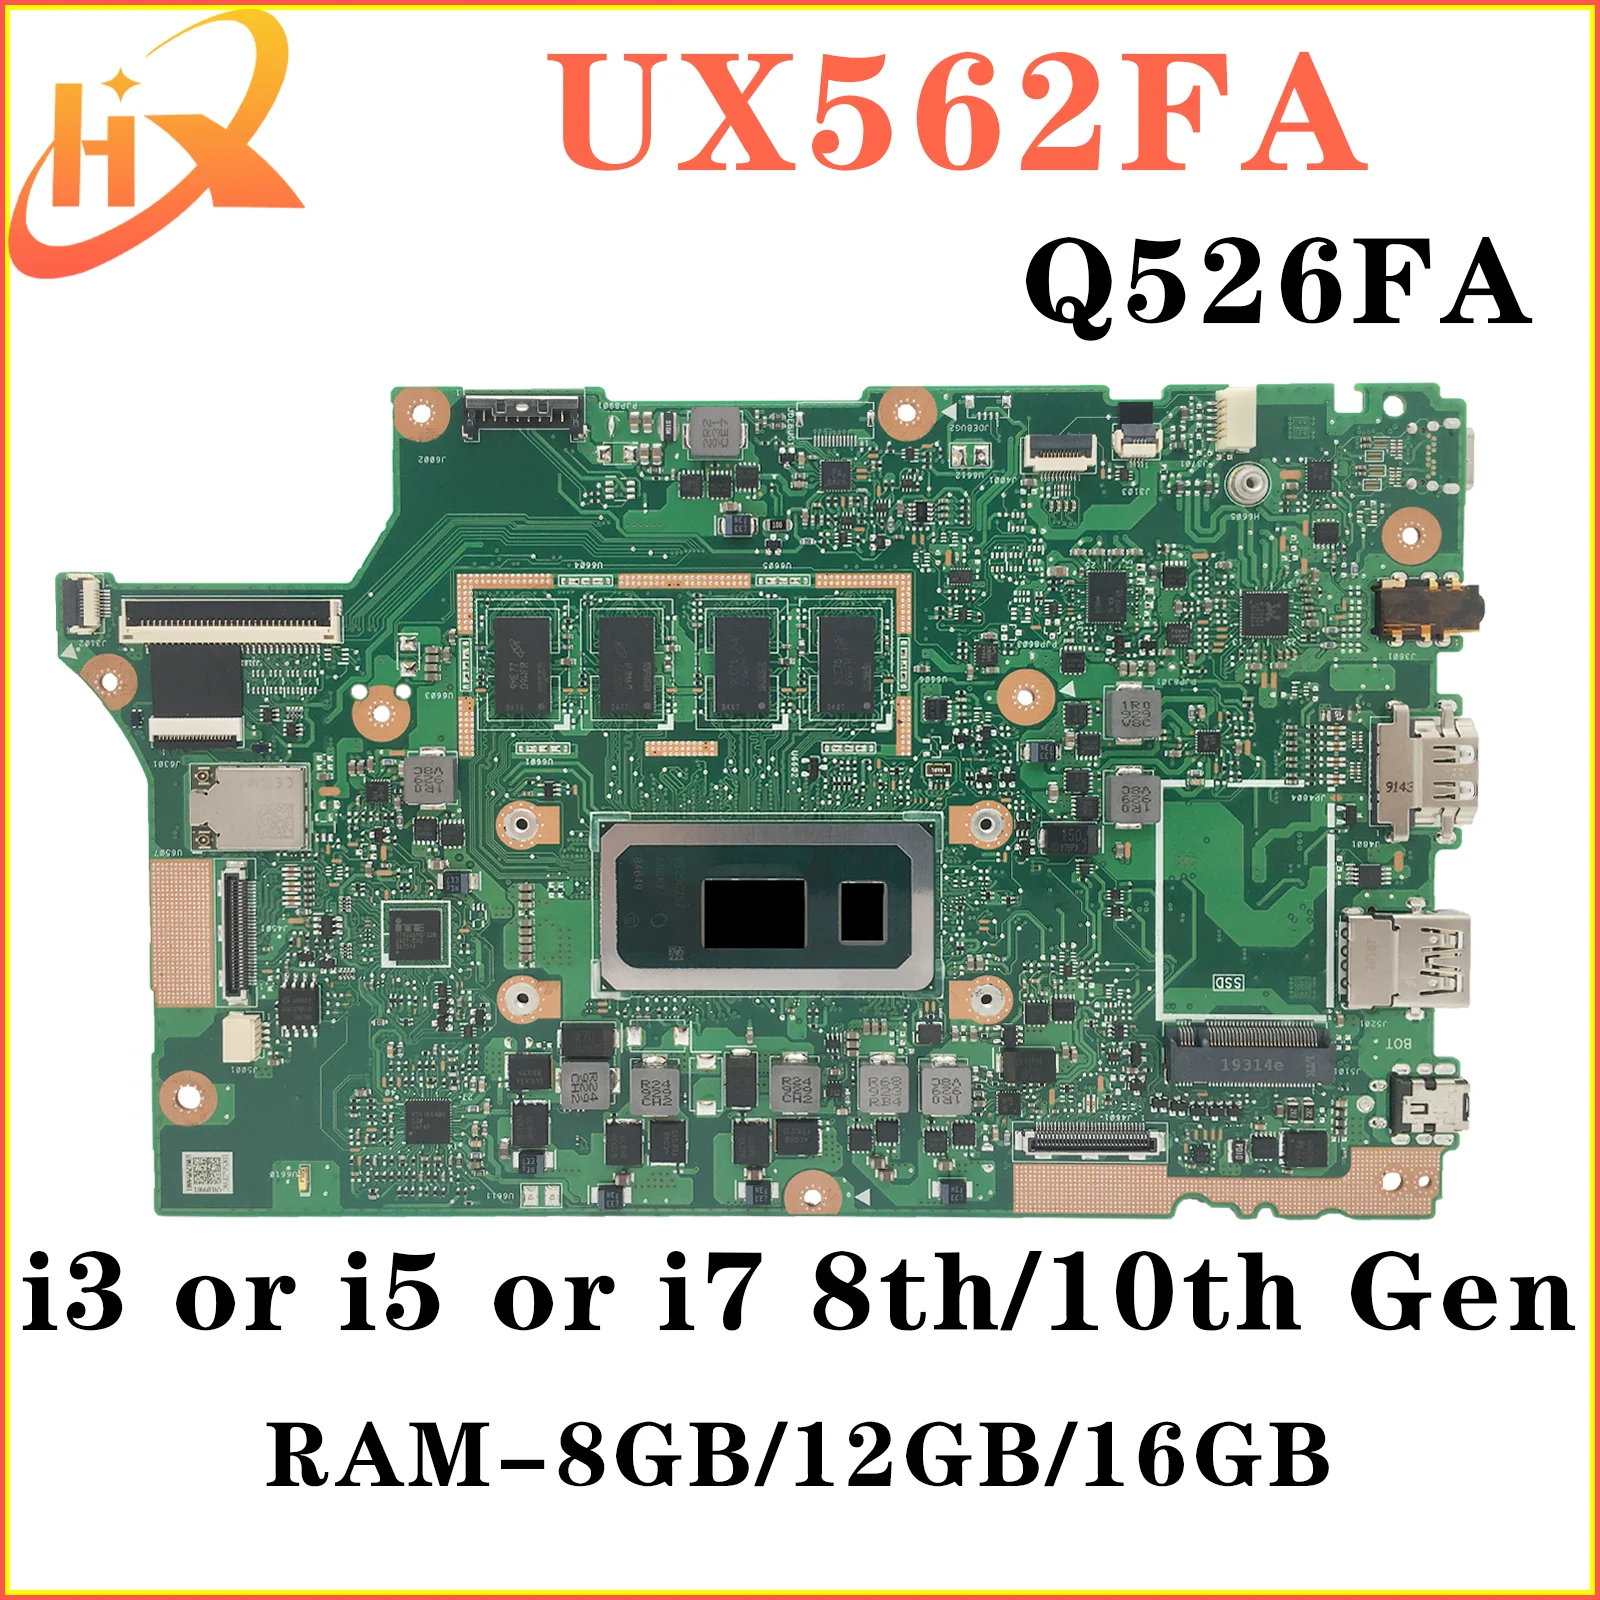 UX562FAC Материнская плата ASUS UX562FA UX562F Q526FA Q526FAC Q526F материнская плата для ноутбука i5 i7 8/10-го поколения RAM-8GB/12GB/16GB материнская плата kefu s400ca материнская плата asus s500ca s400c s500c s400 s500 для ноутбука i3 i5 i7 3 го поколения 4g ram